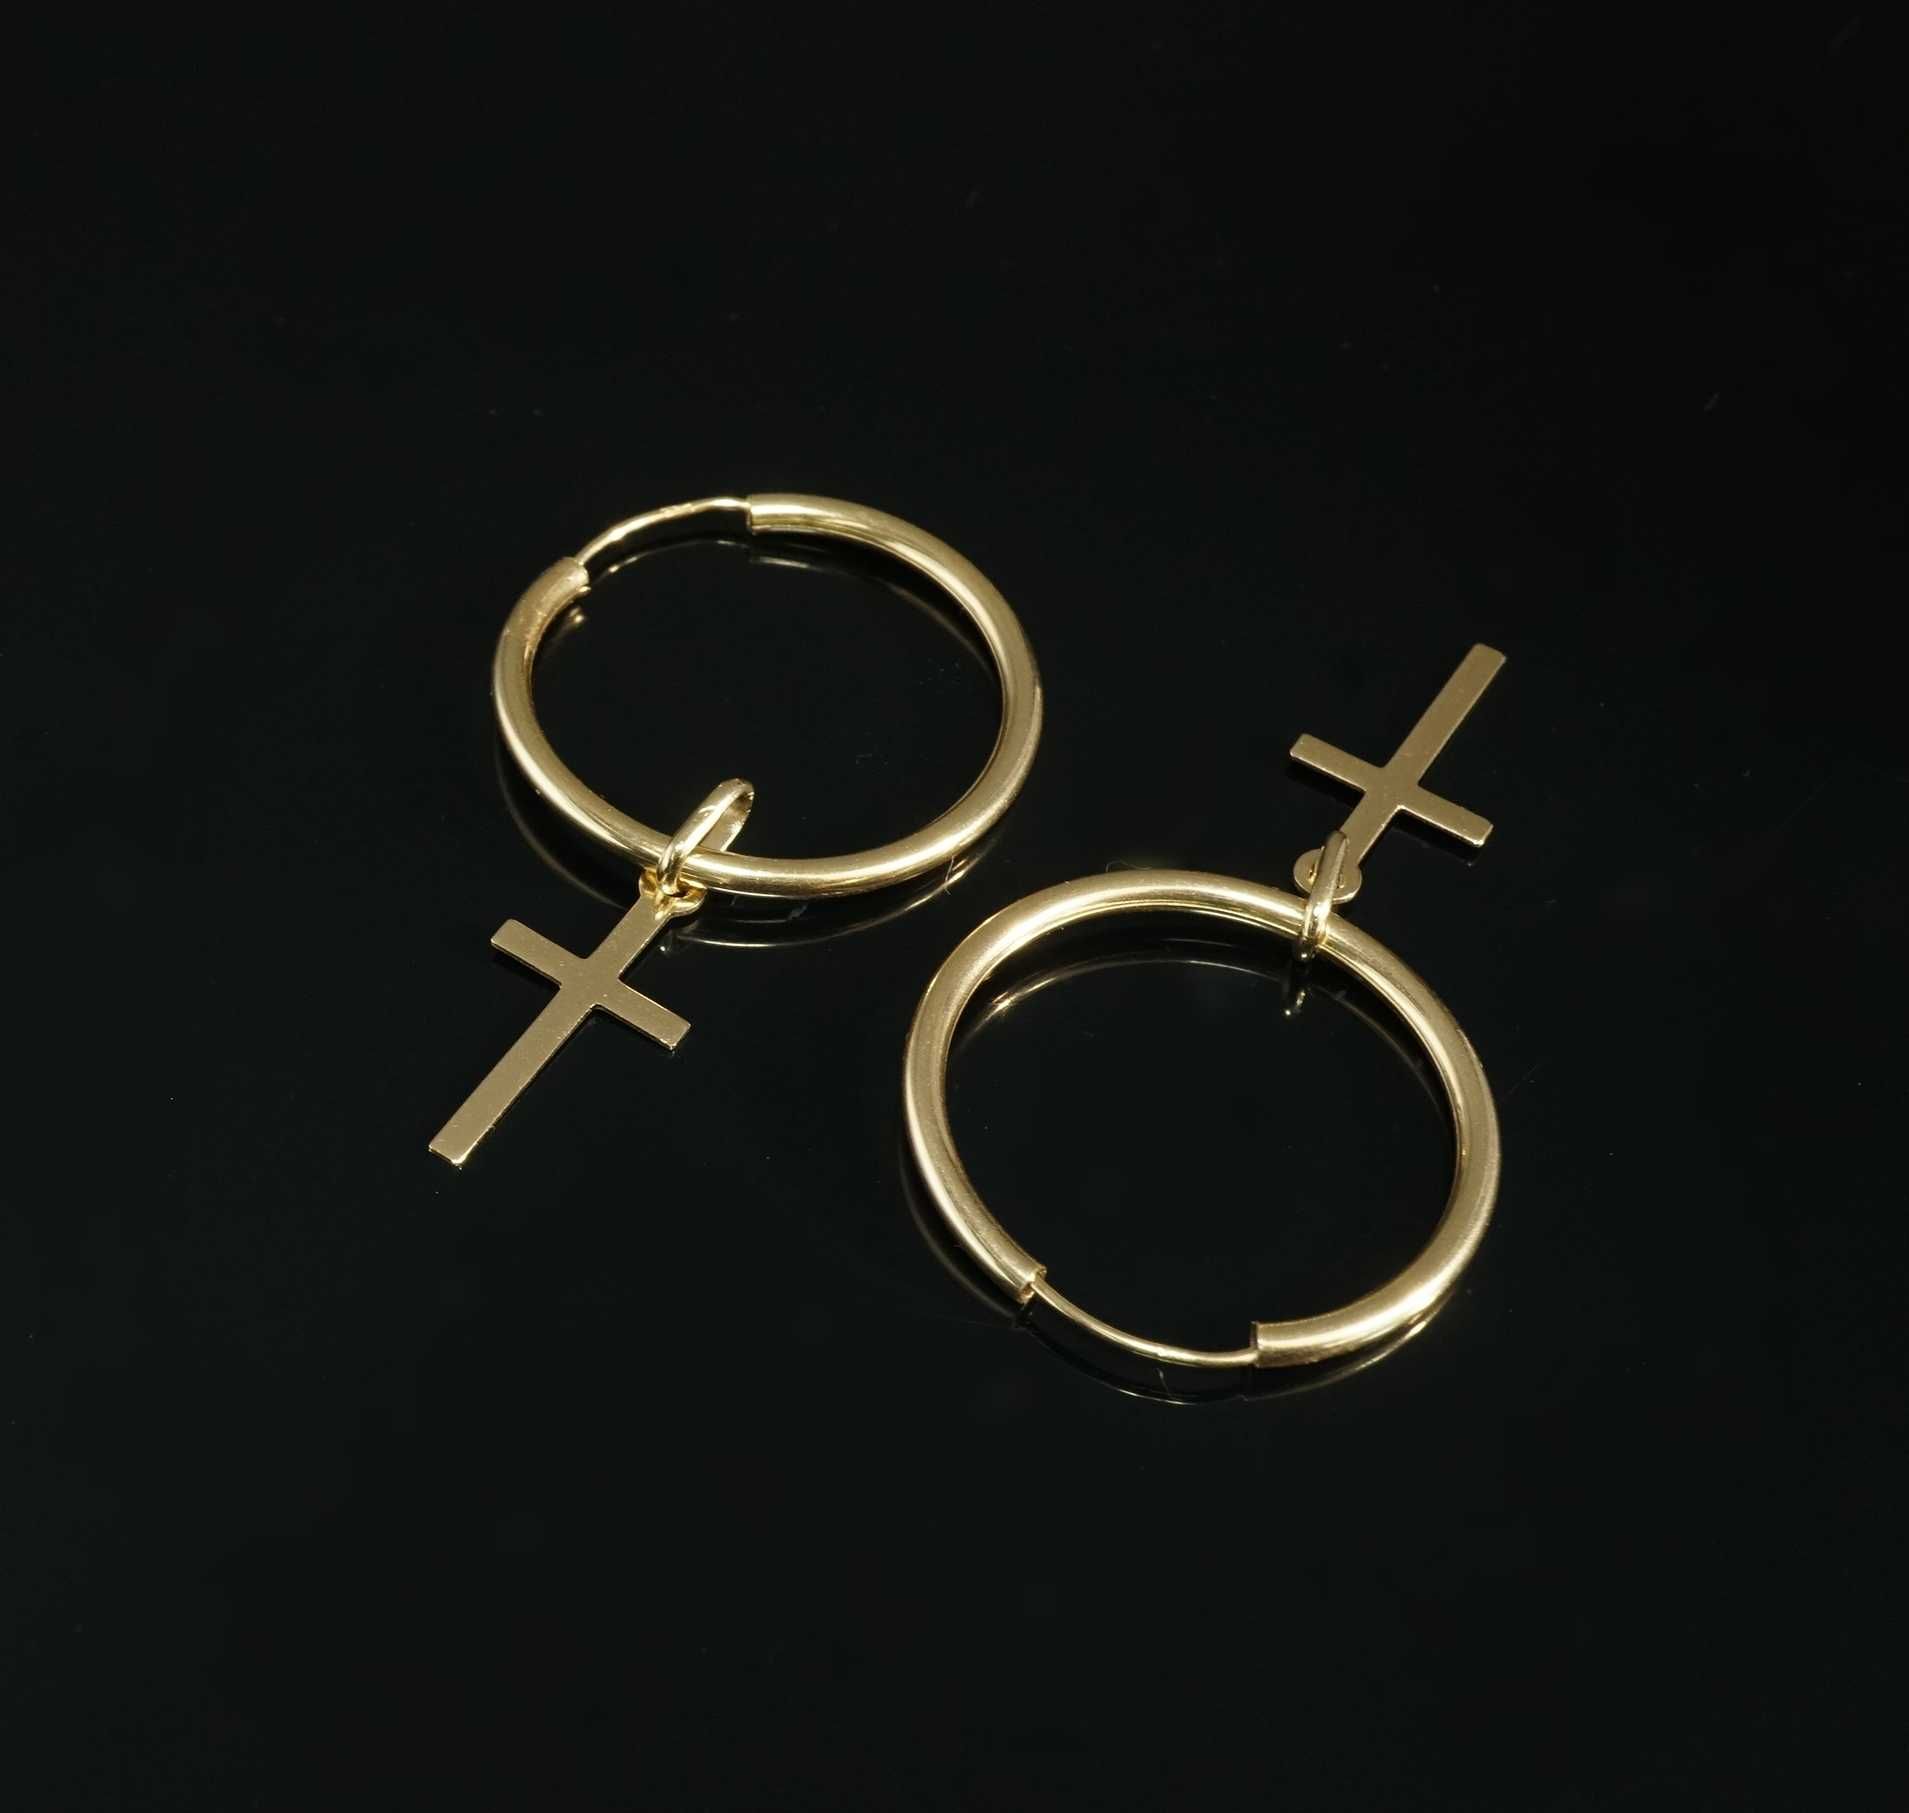 Złoto 585 - złote kolczyki, małe koła z krzyżykami. Koła 2,5 cm